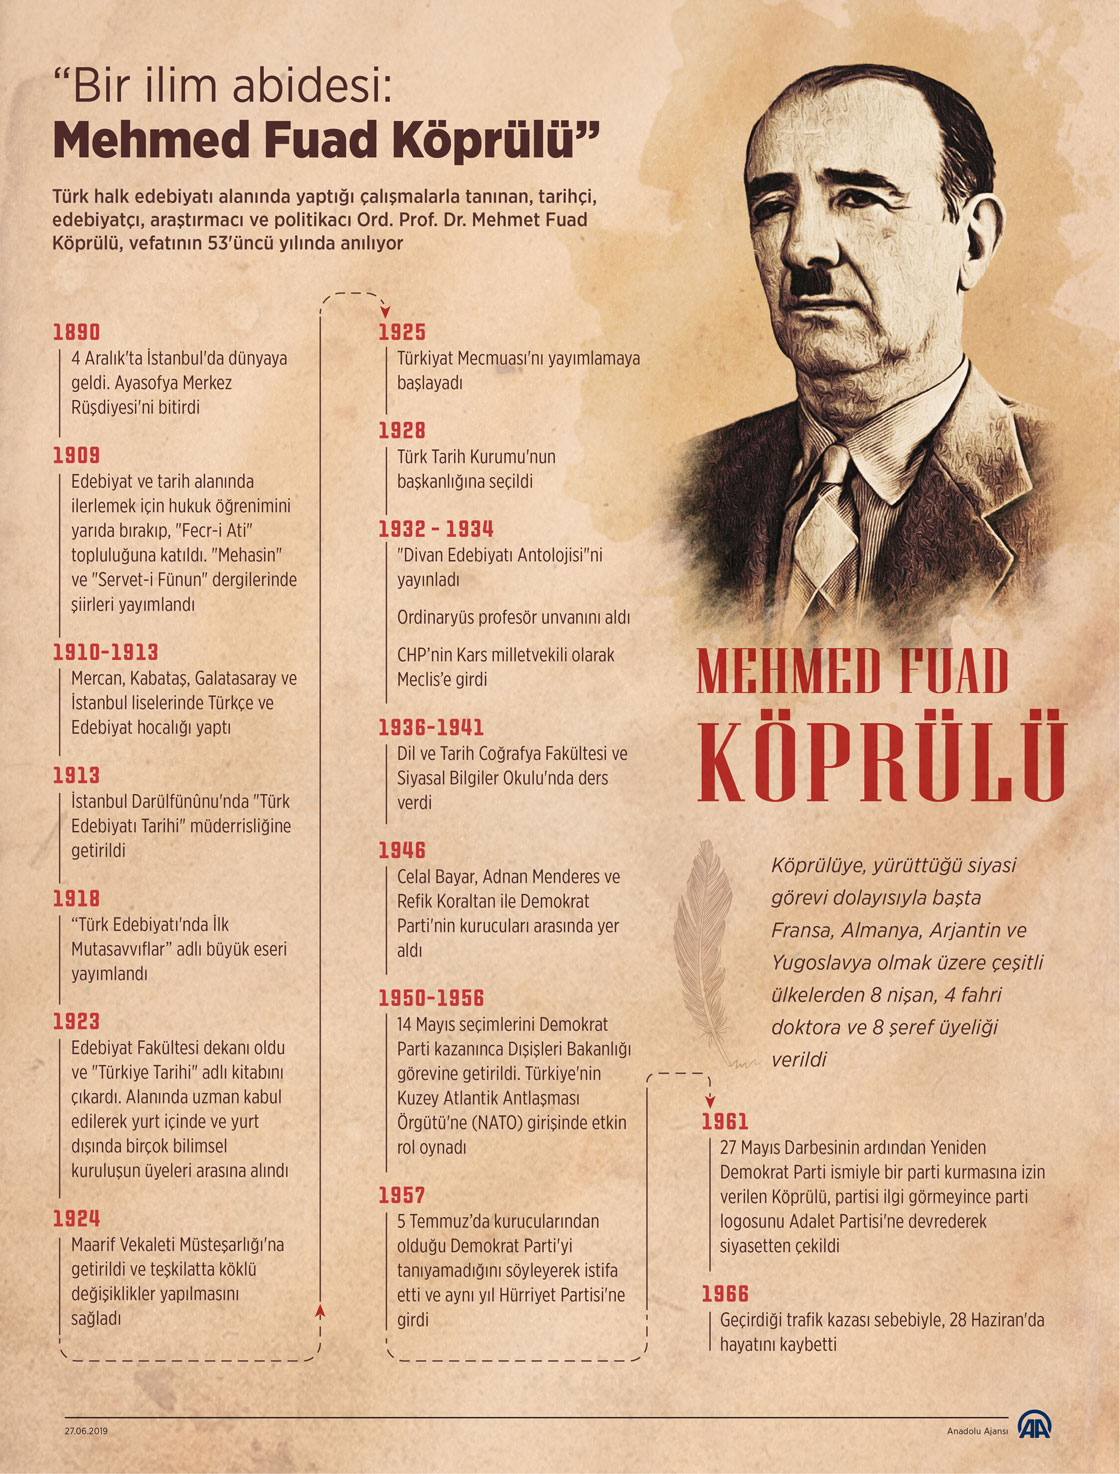  'Bir ilim abidesi: Mehmed Fuad Köprülü'